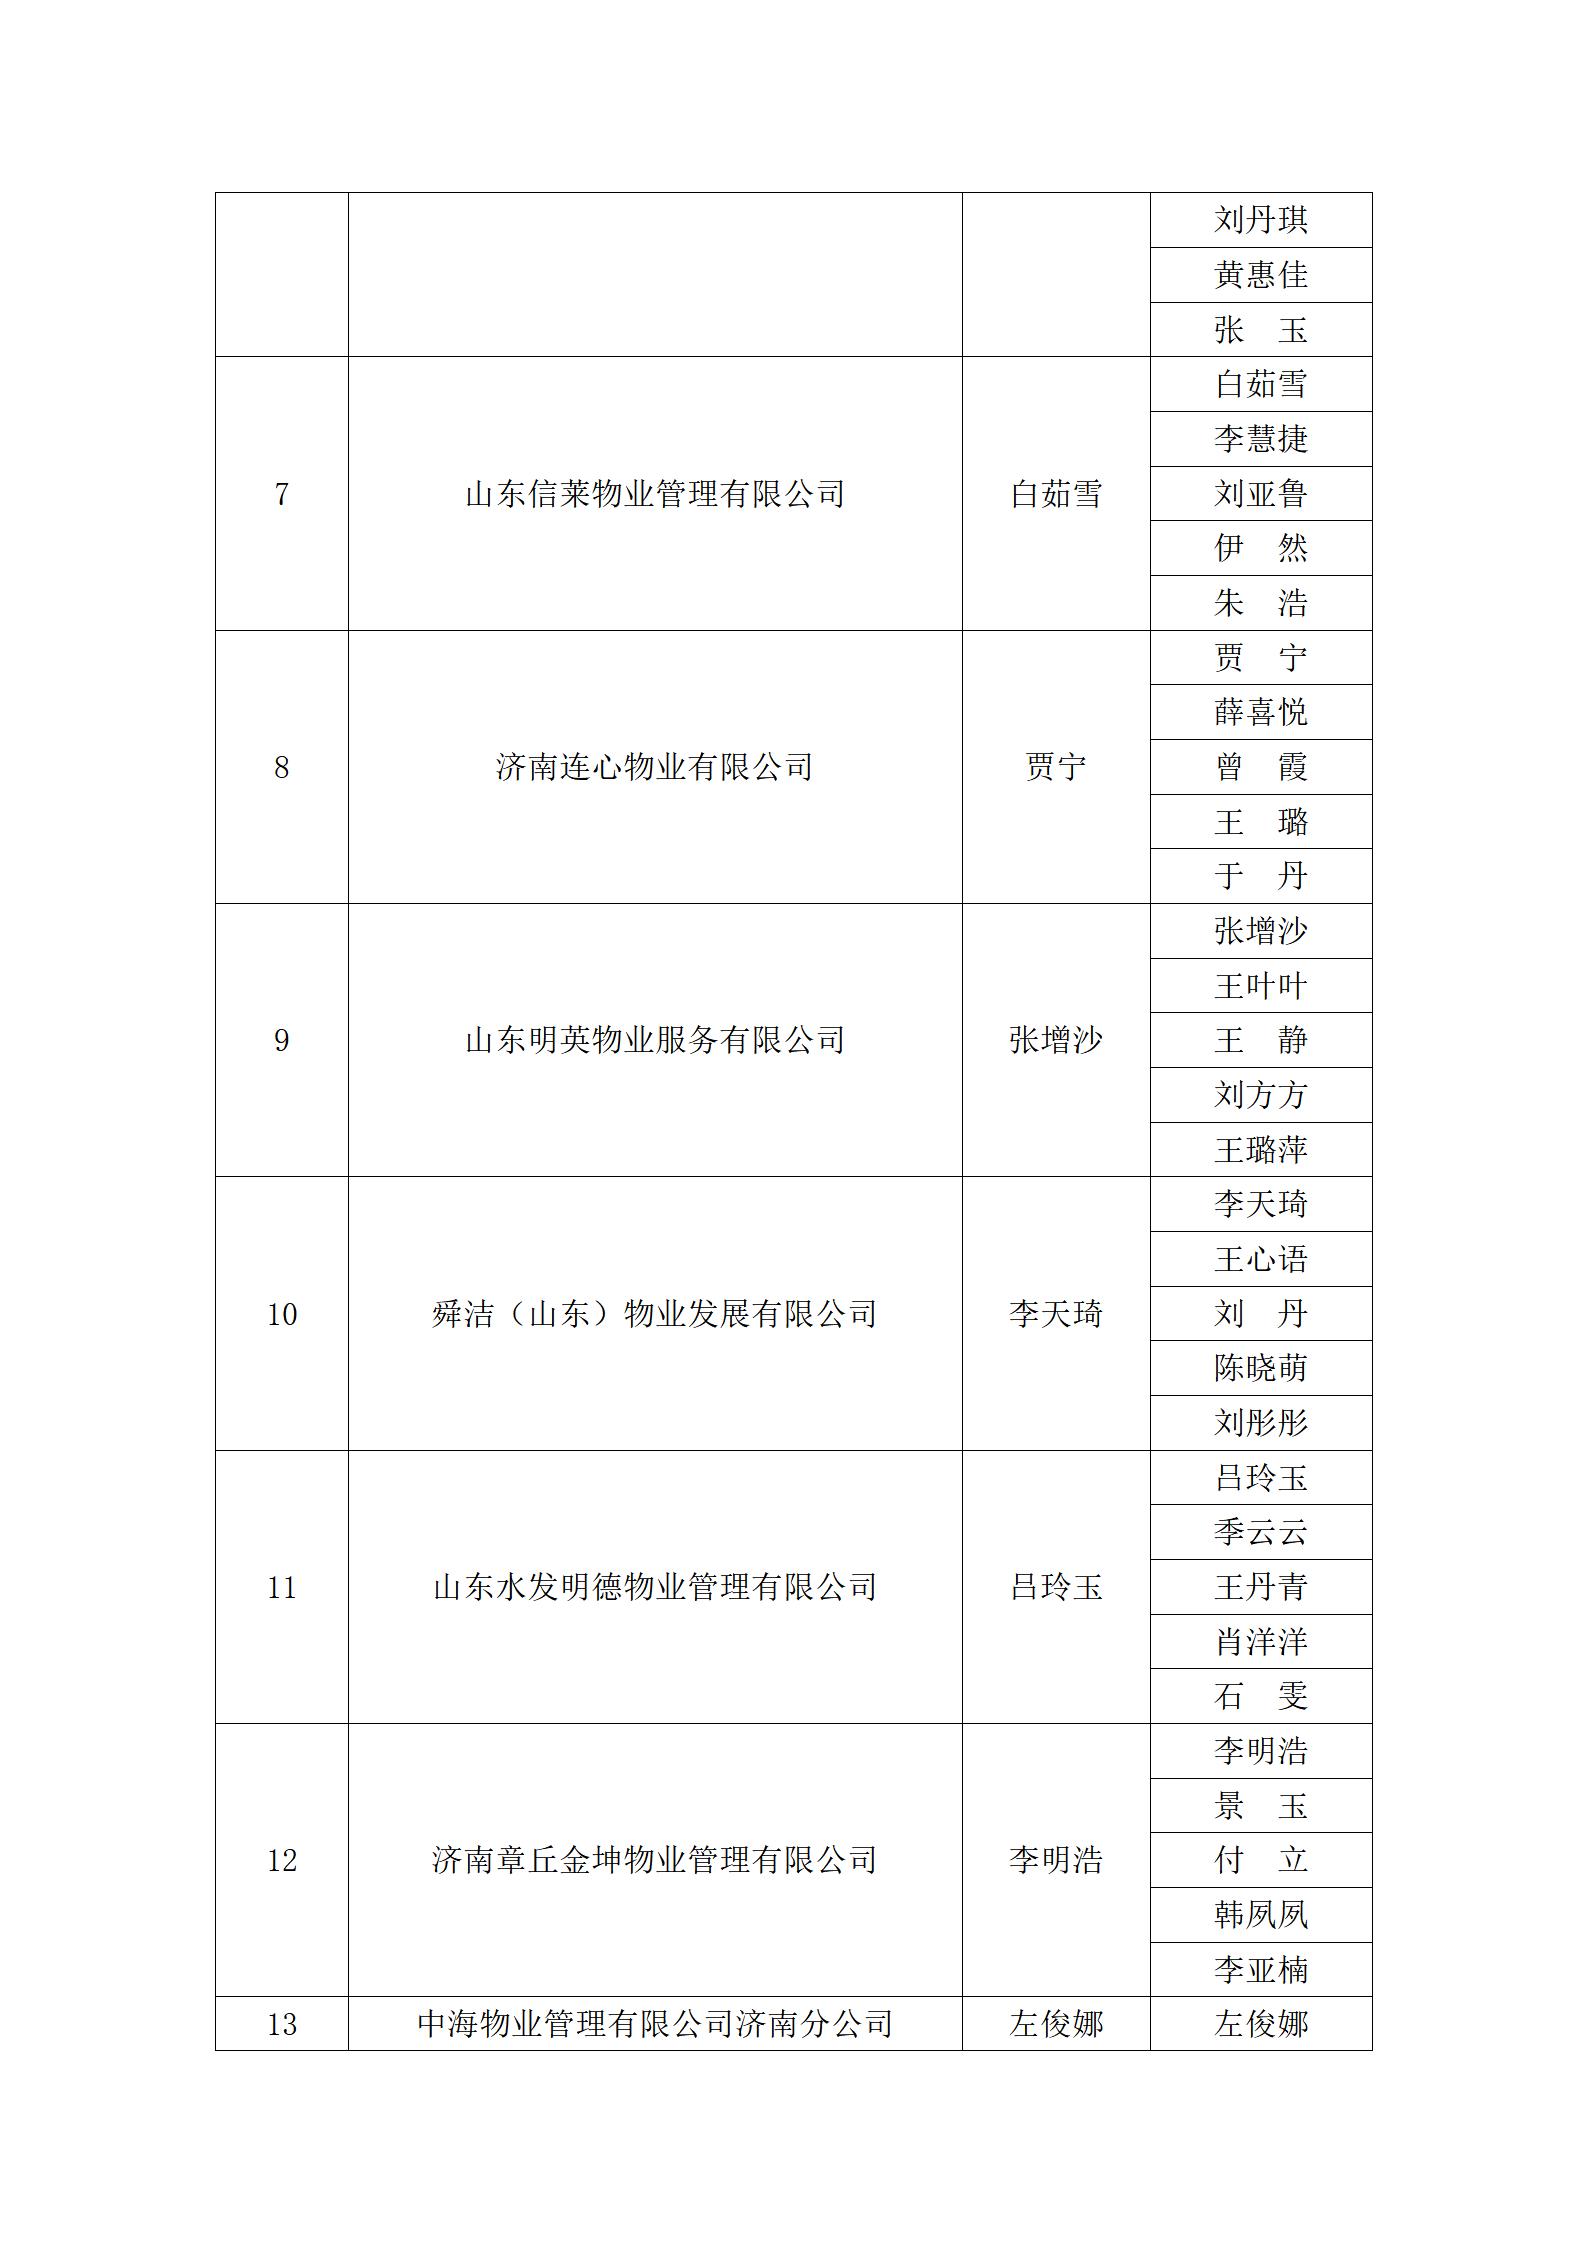 关于“明德杯”第六届济南市物业服务行业职业技能竞赛选手名单的公示_12